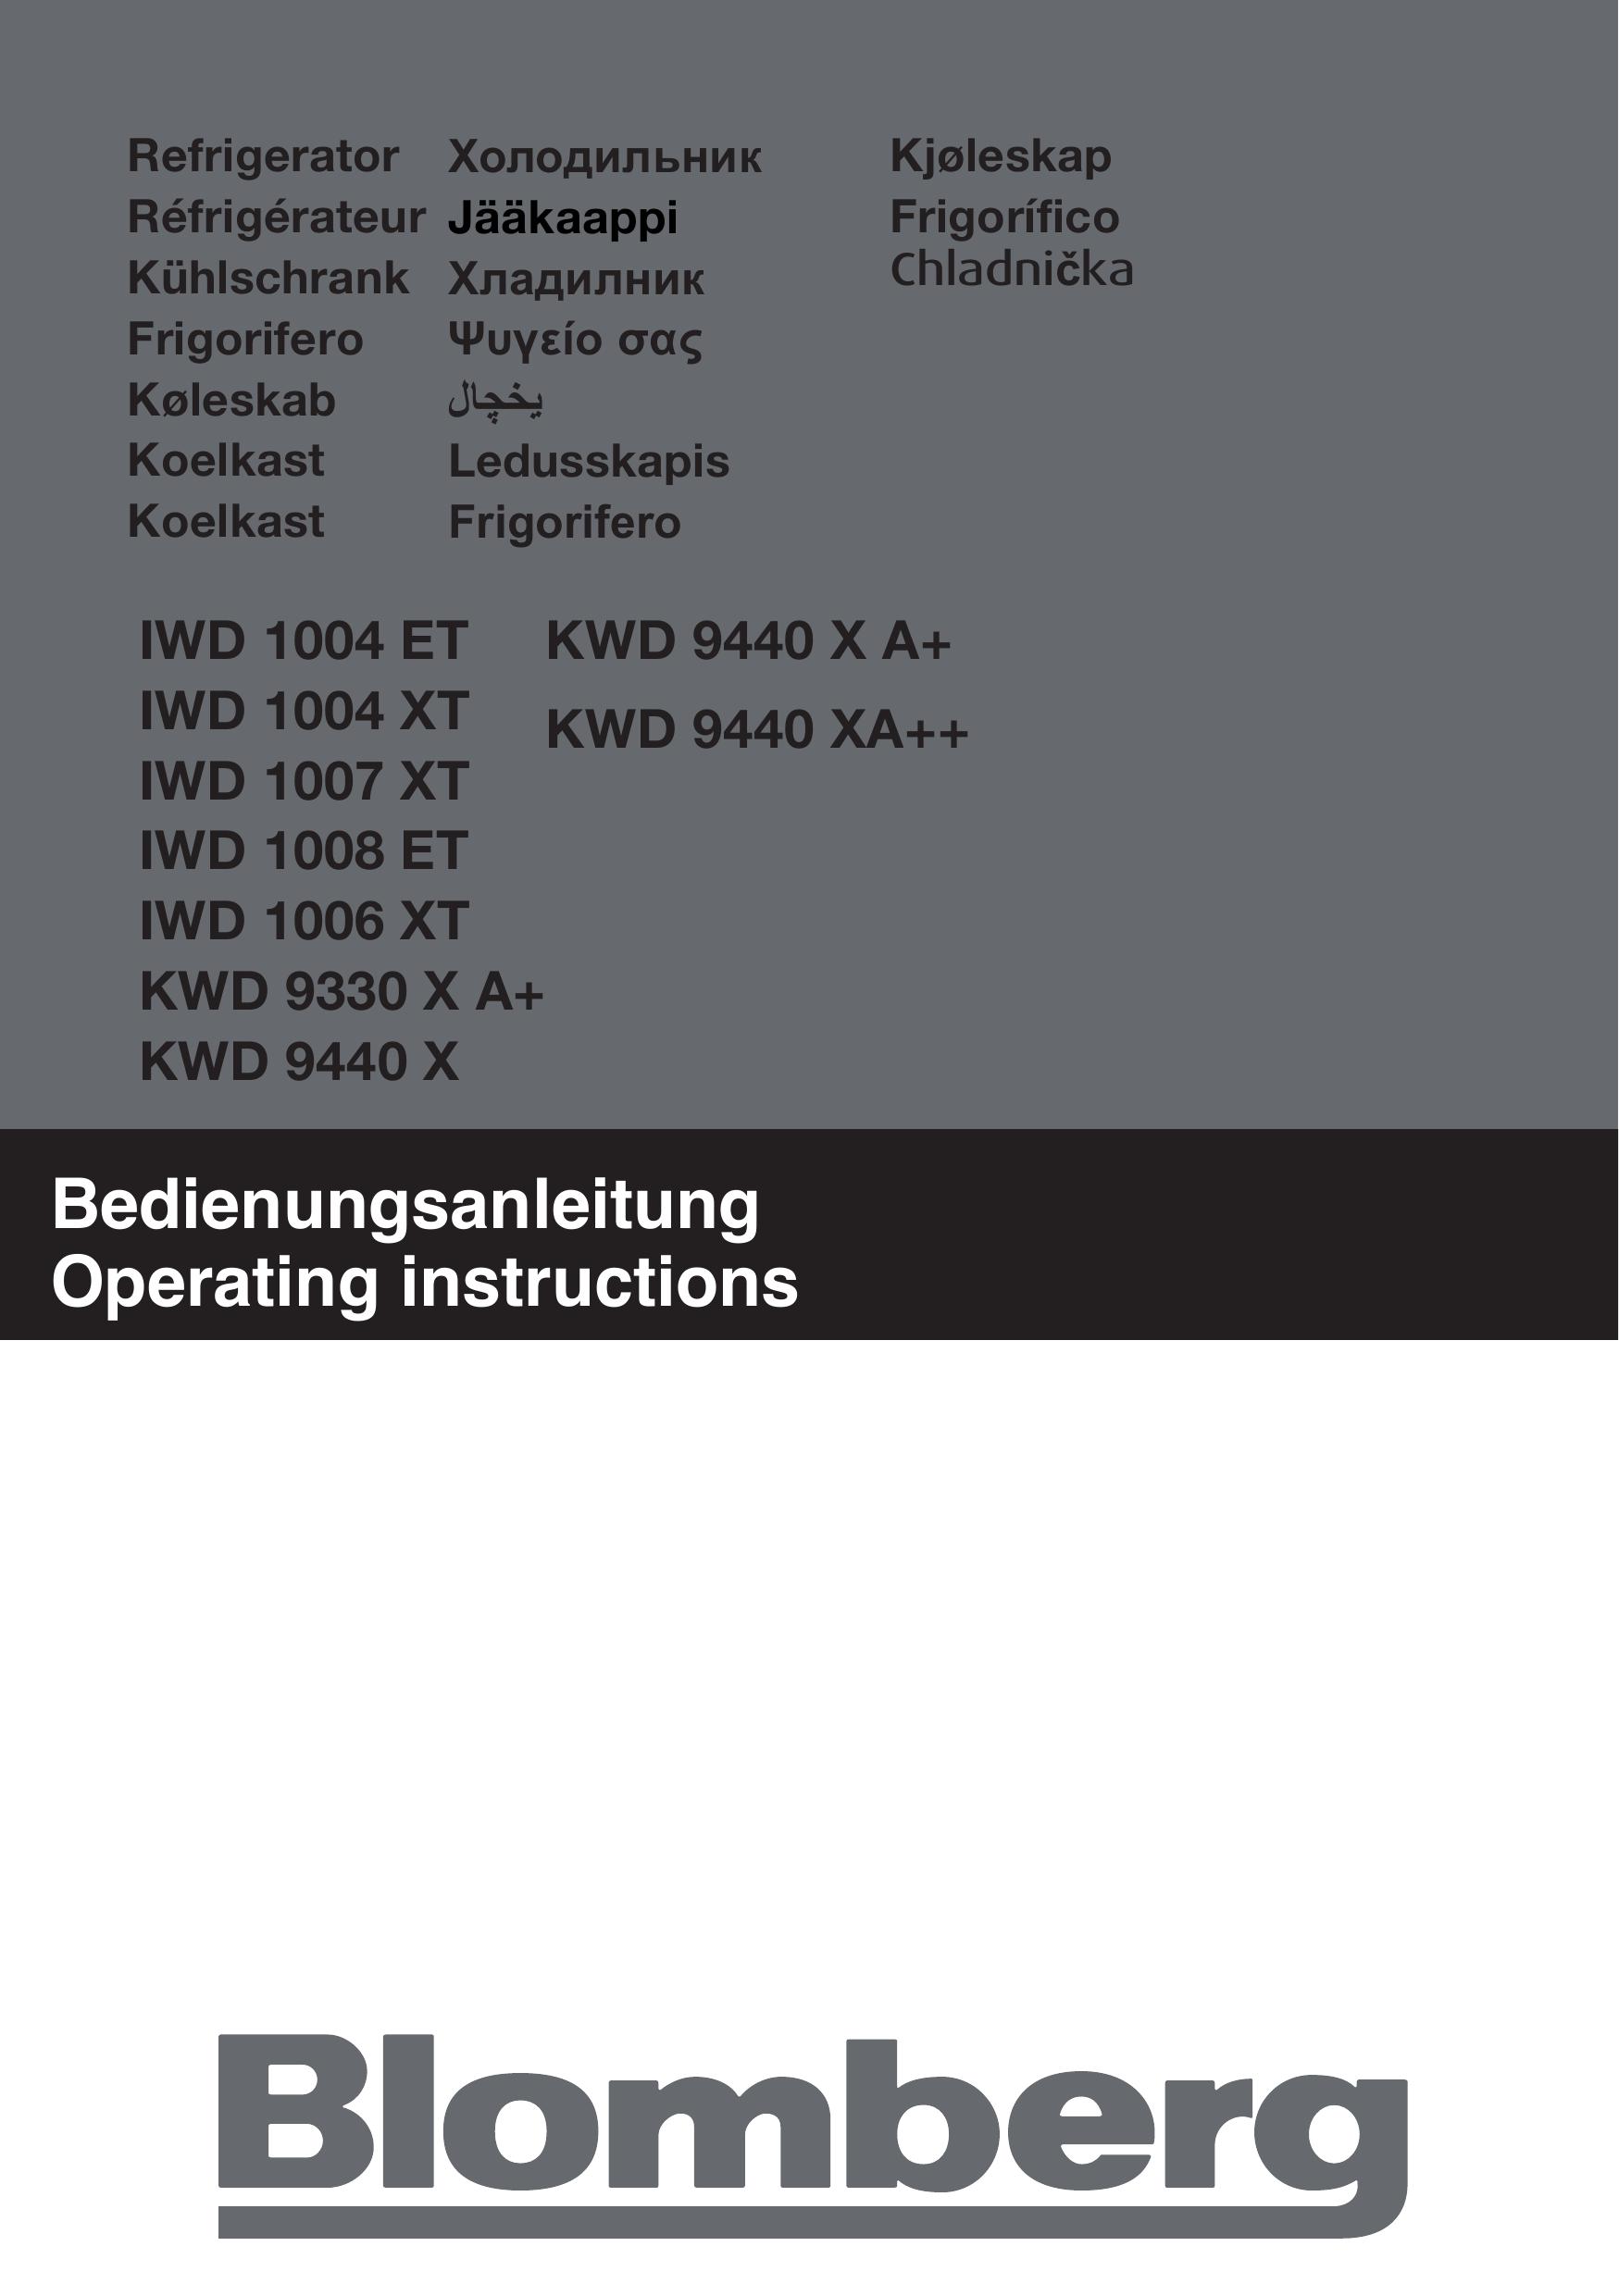 Blomberg KWD 9440 XA++ Refrigerator User Manual